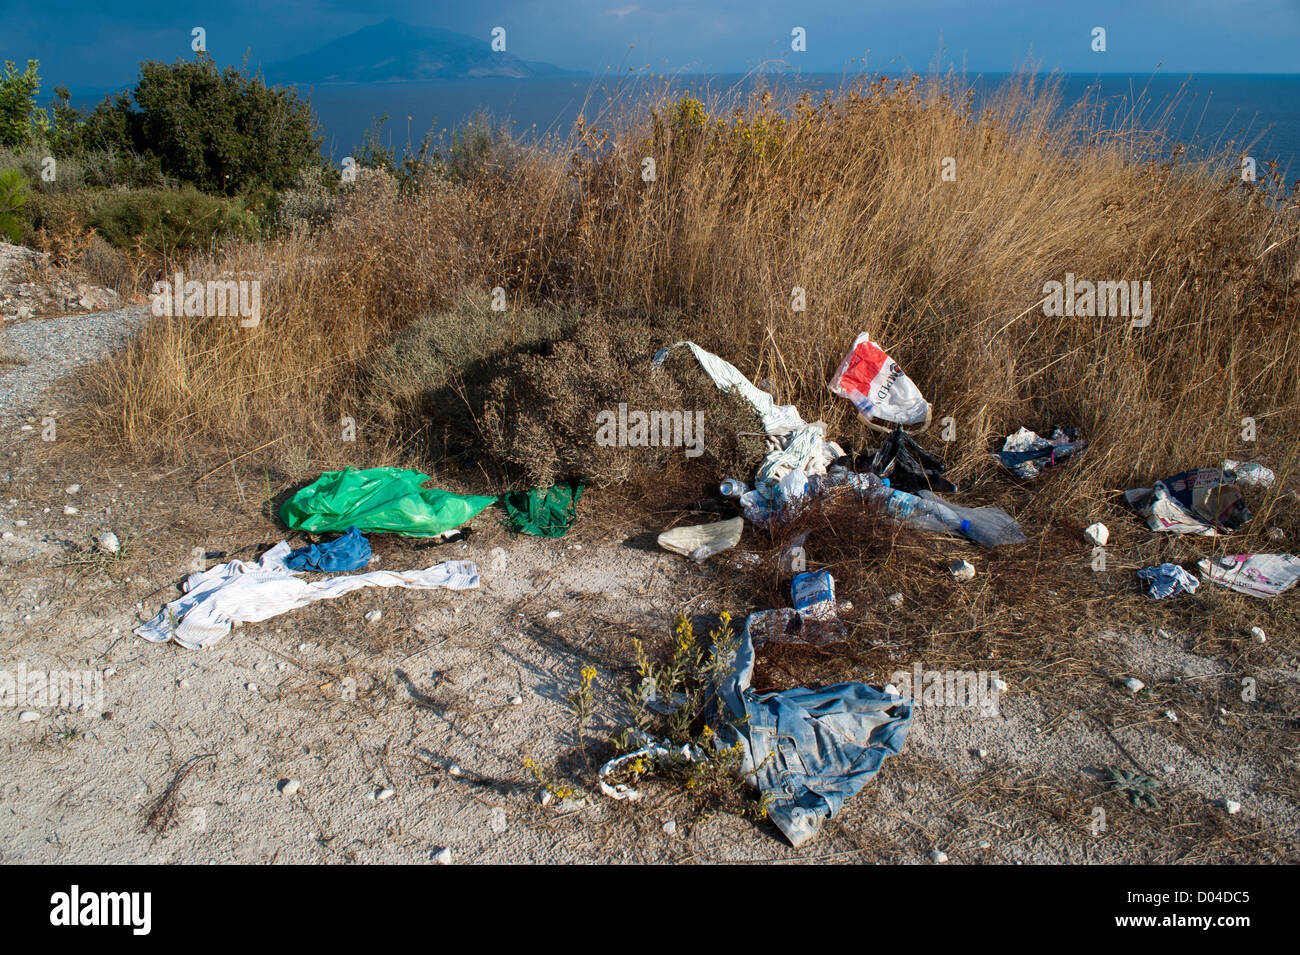 Possessions abandonnés par un groupe d'immigrants illégaux qui entrent dans la Grèce à la côte de l'île égéenne de Samos. Banque D'Images